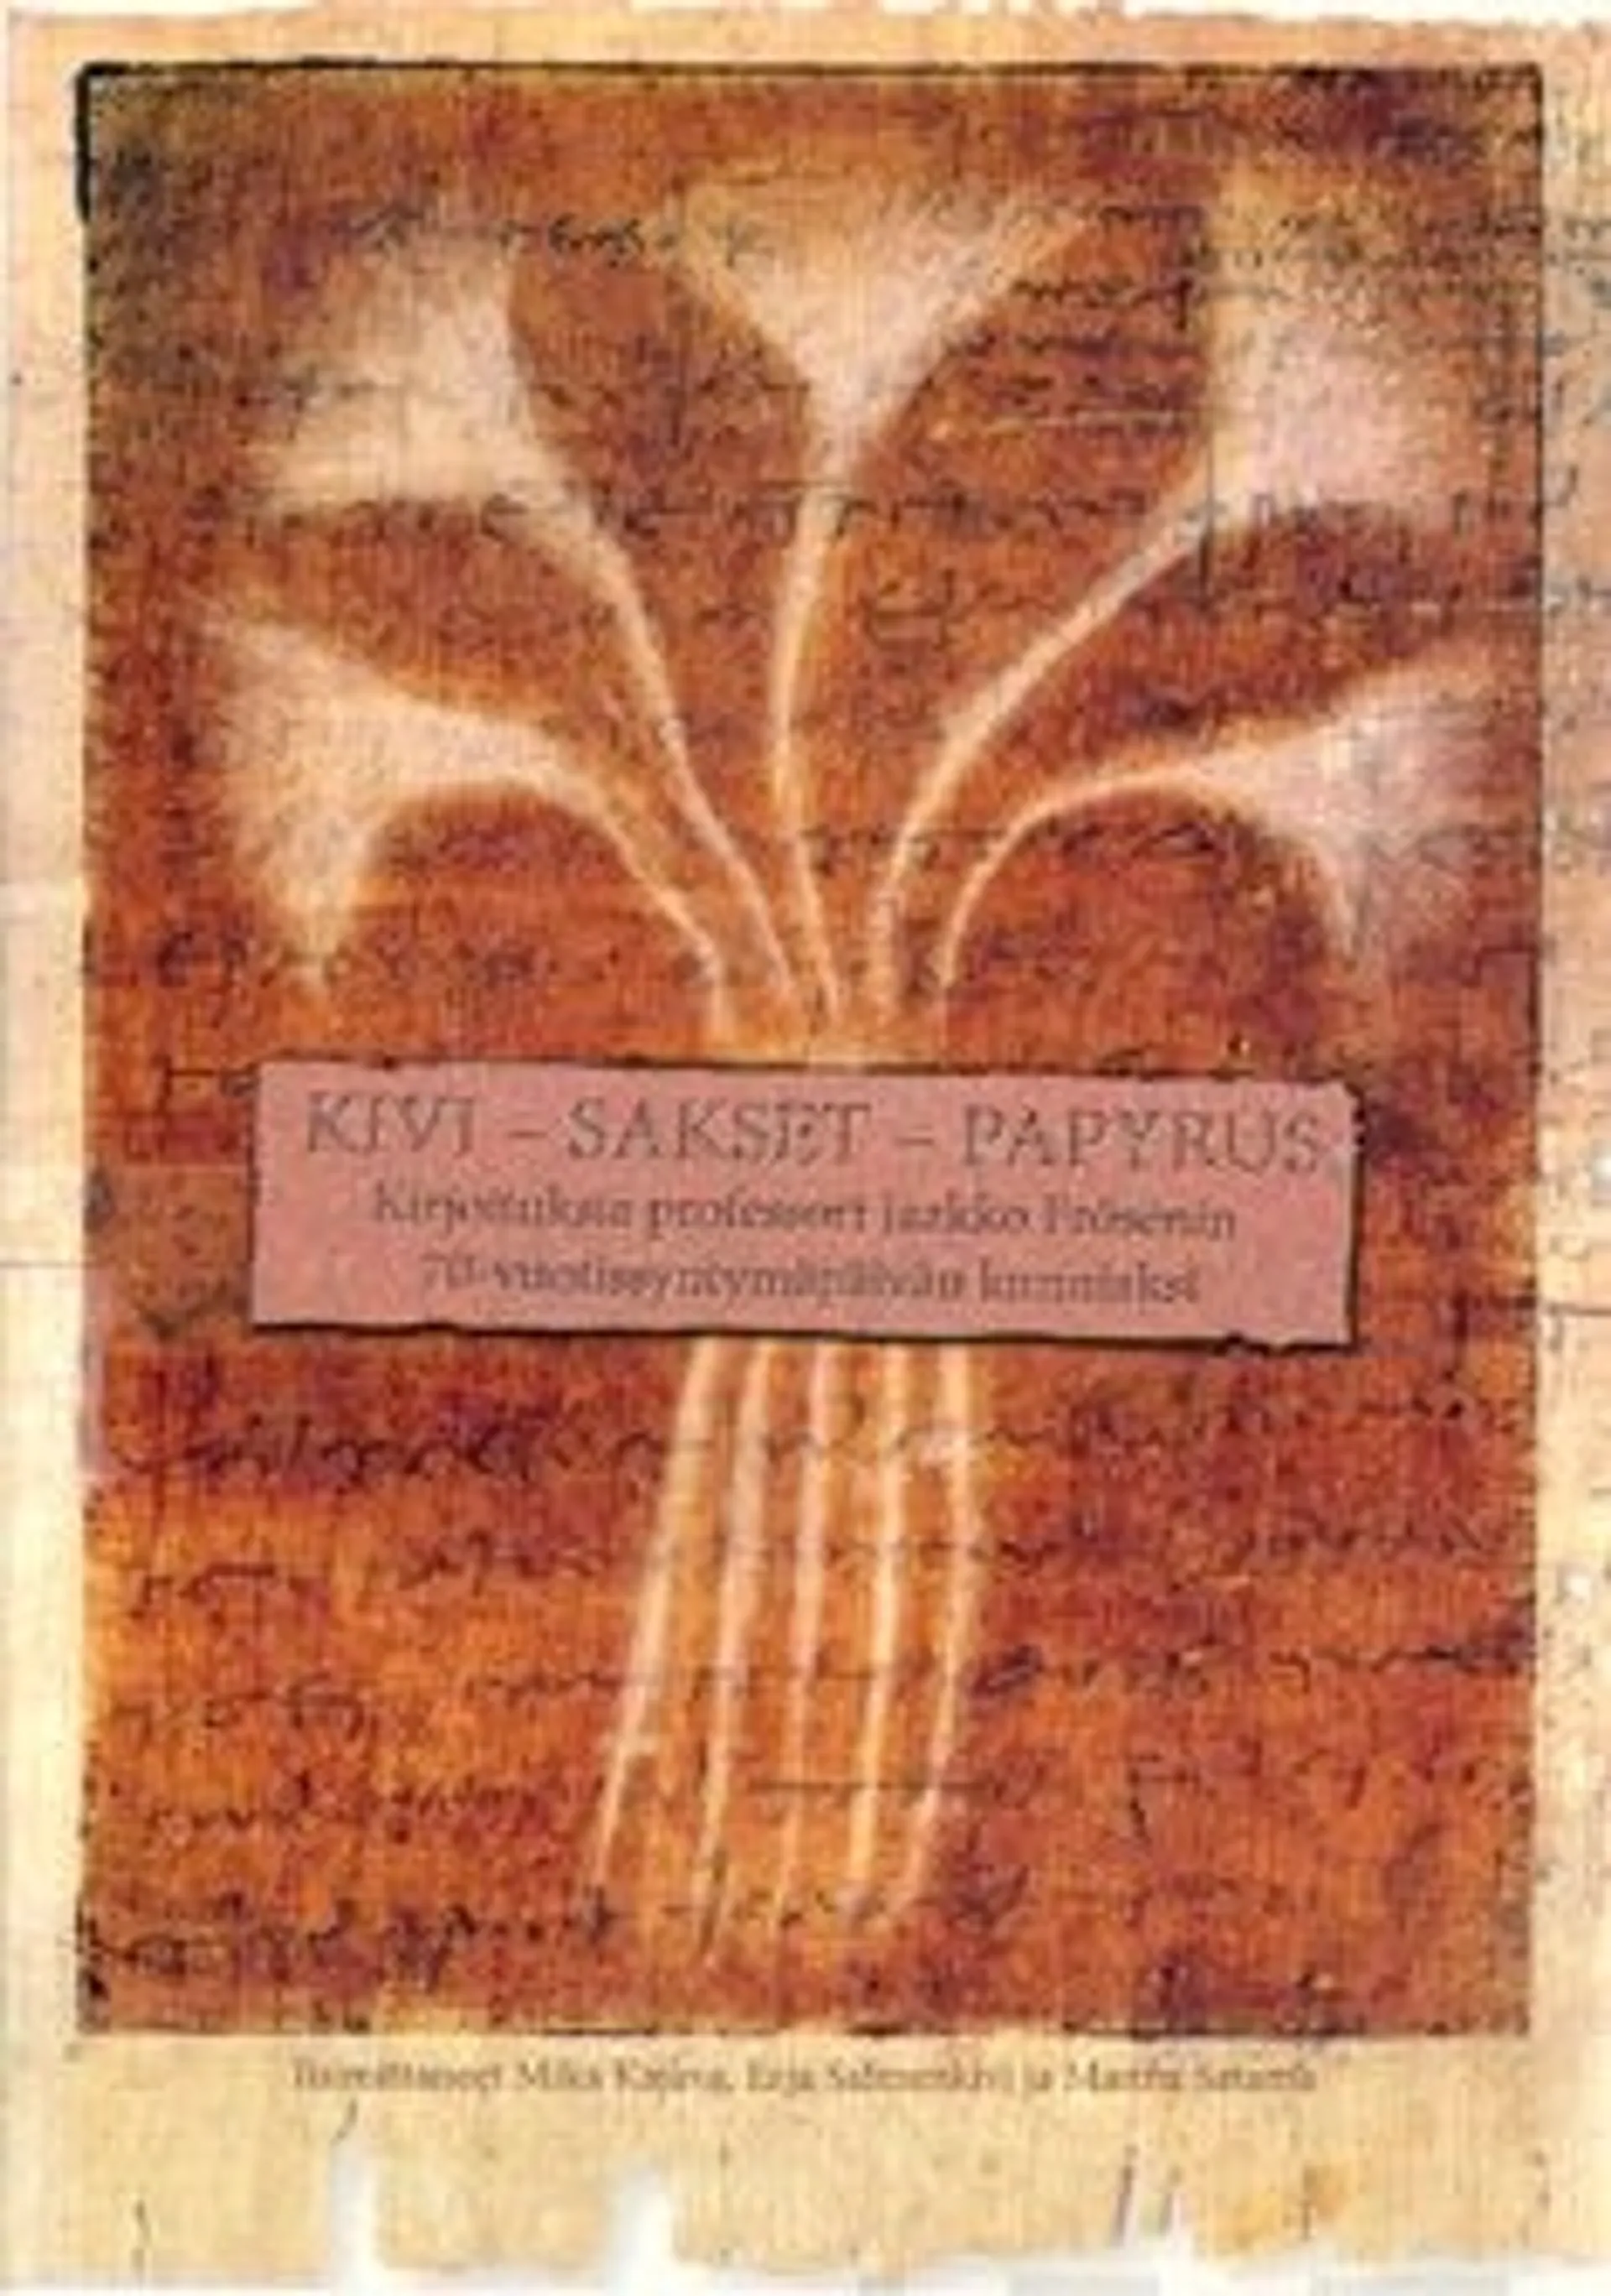 Kivi - Sakset - Papyrus - kirjoituksia professori Jaakko Frösénin 70-vuotissyntymäpäivän kunniaksi